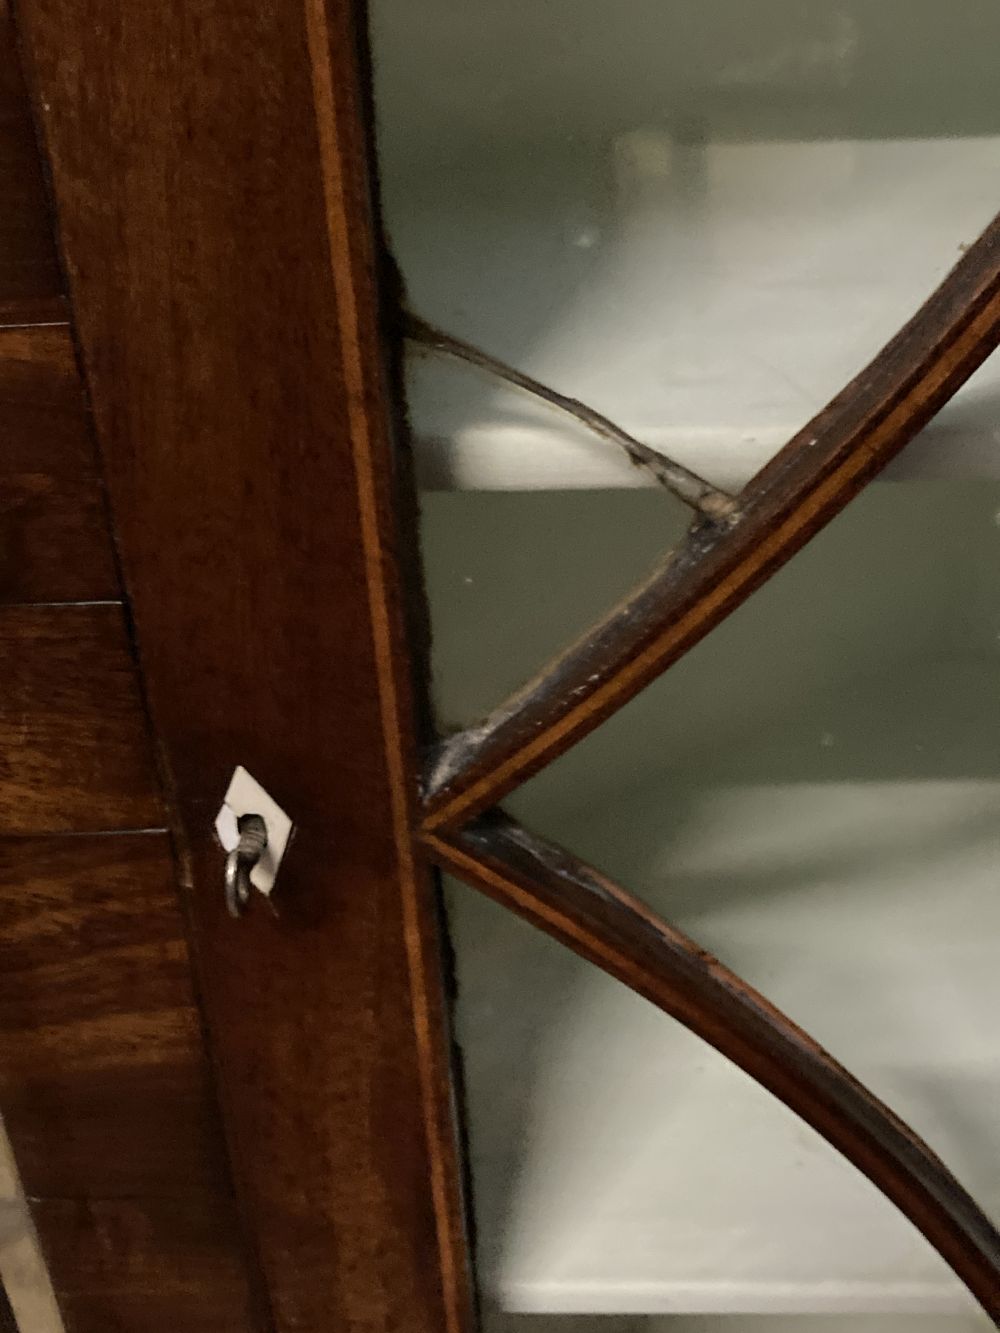 A George III mahogany hanging corner cupboard with glazed door, width 74cm, depth 39cm, height 110cm